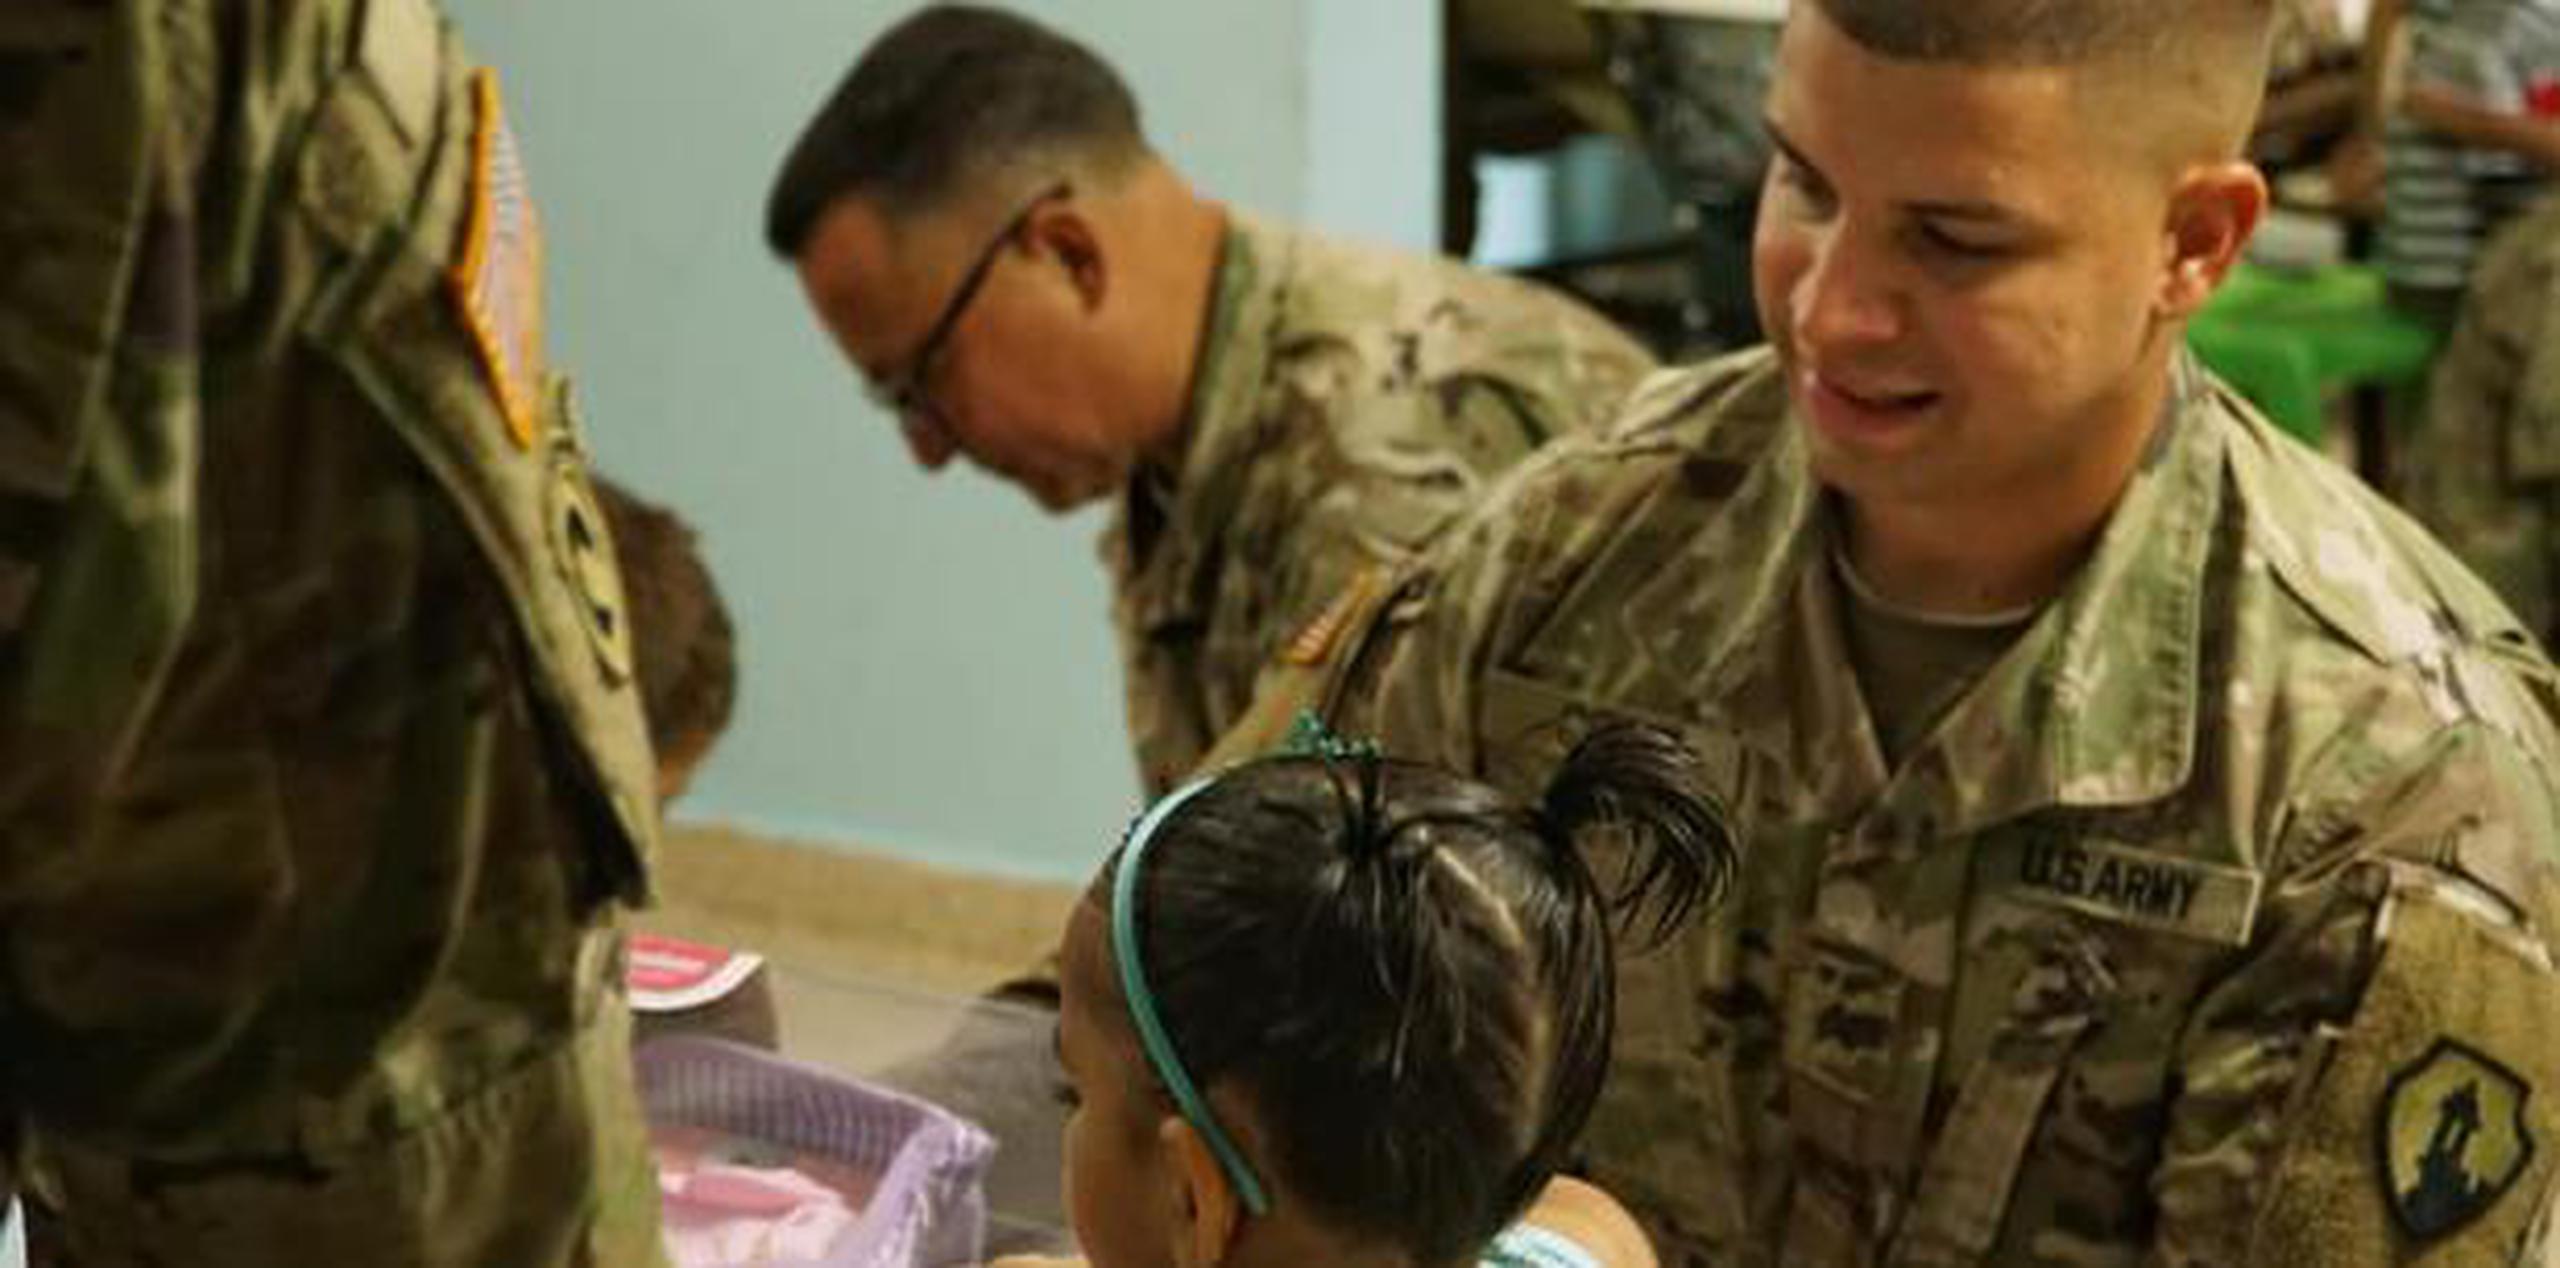 Como parte de la visita, los soldados compartieron y jugaron con los pequeños. (Suministrada)